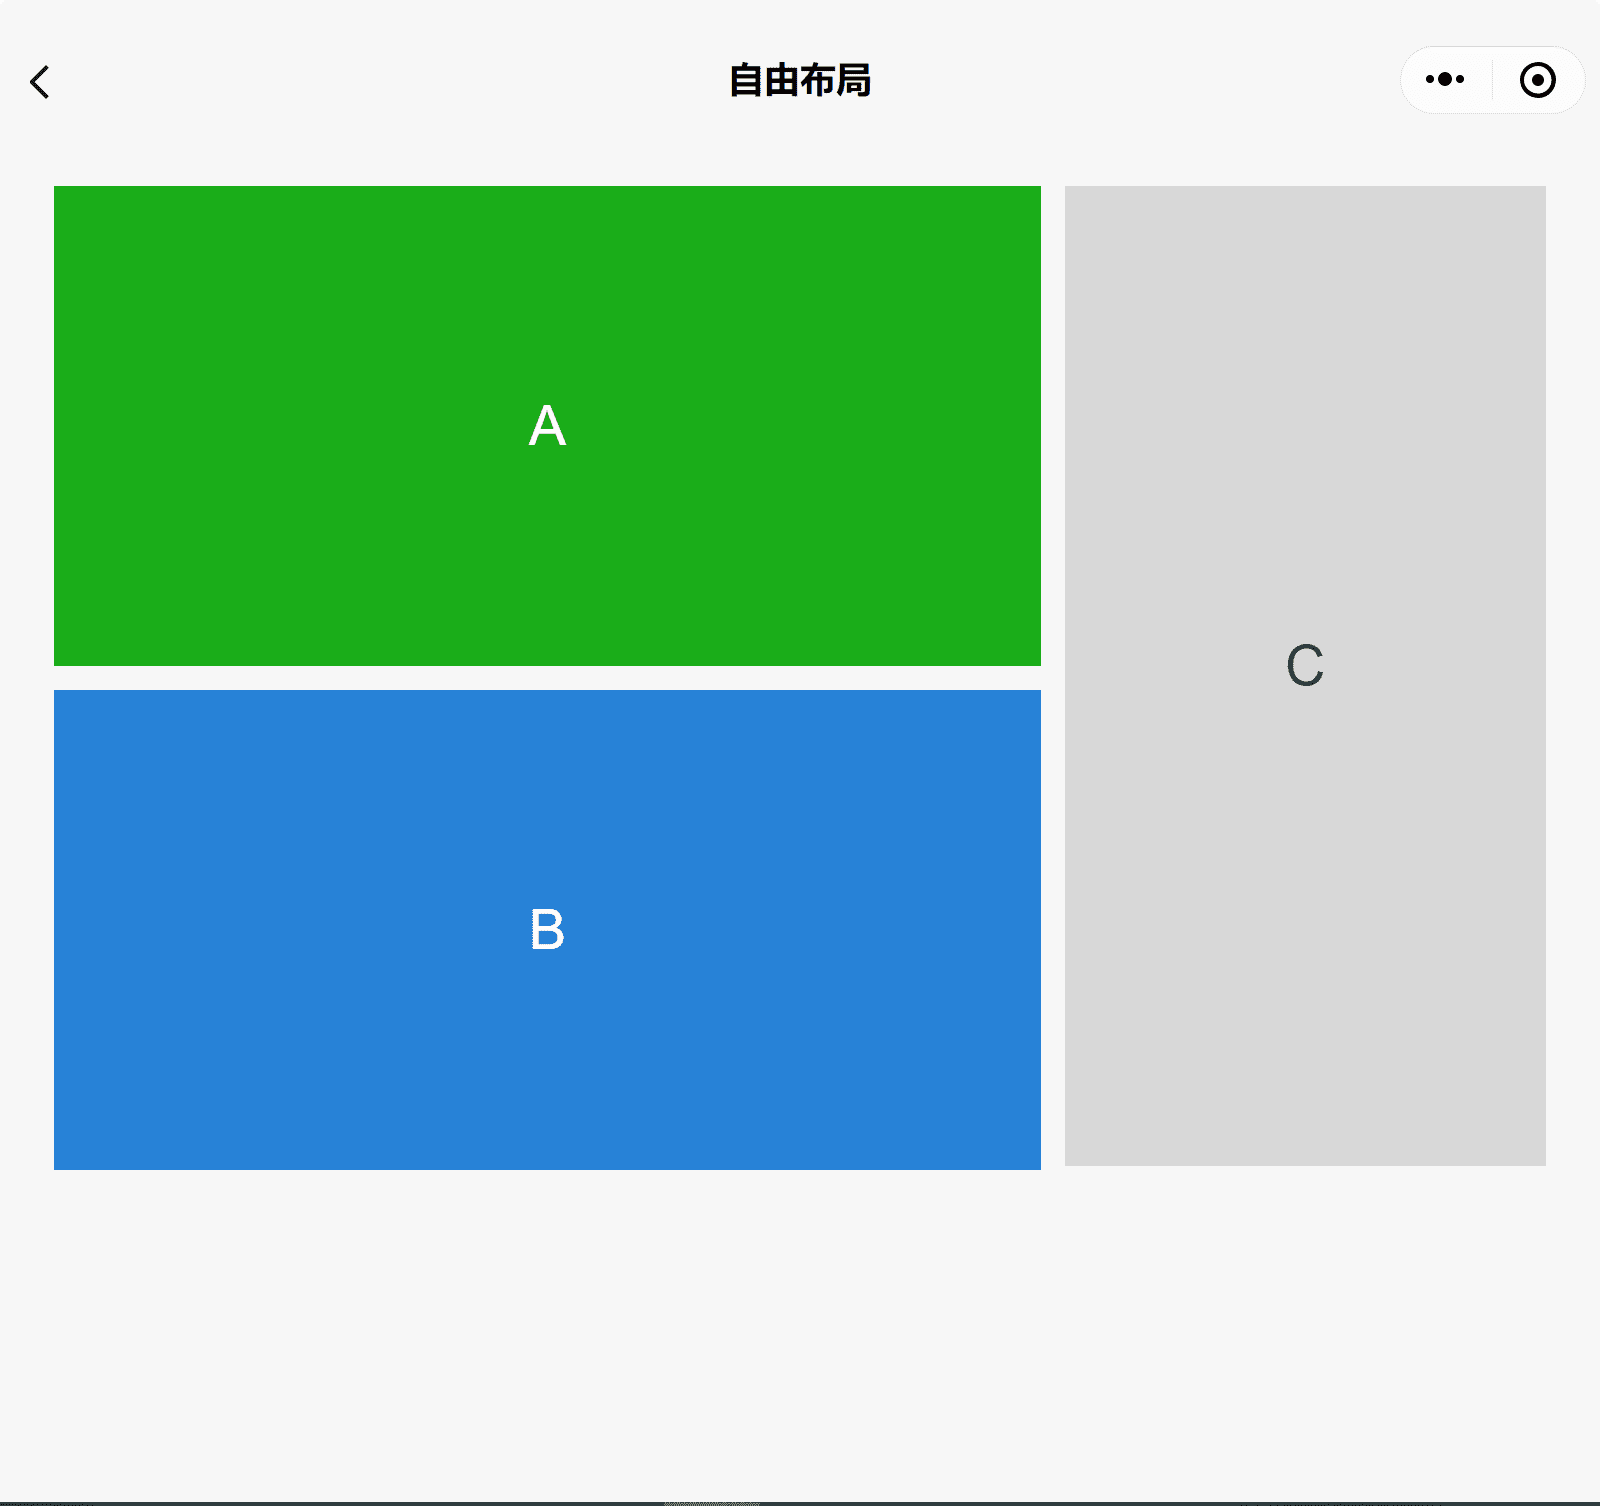 แอปสาธิตคอมโพเนนต์ของ WeChat ในหน้าต่างกว้างแสดงภาพกล่อง 3 ช่องคือ ก, ข และ ค โดยมี ก. วางซ้อนอยู่ด้านบน B และ C ที่ด้านข้าง